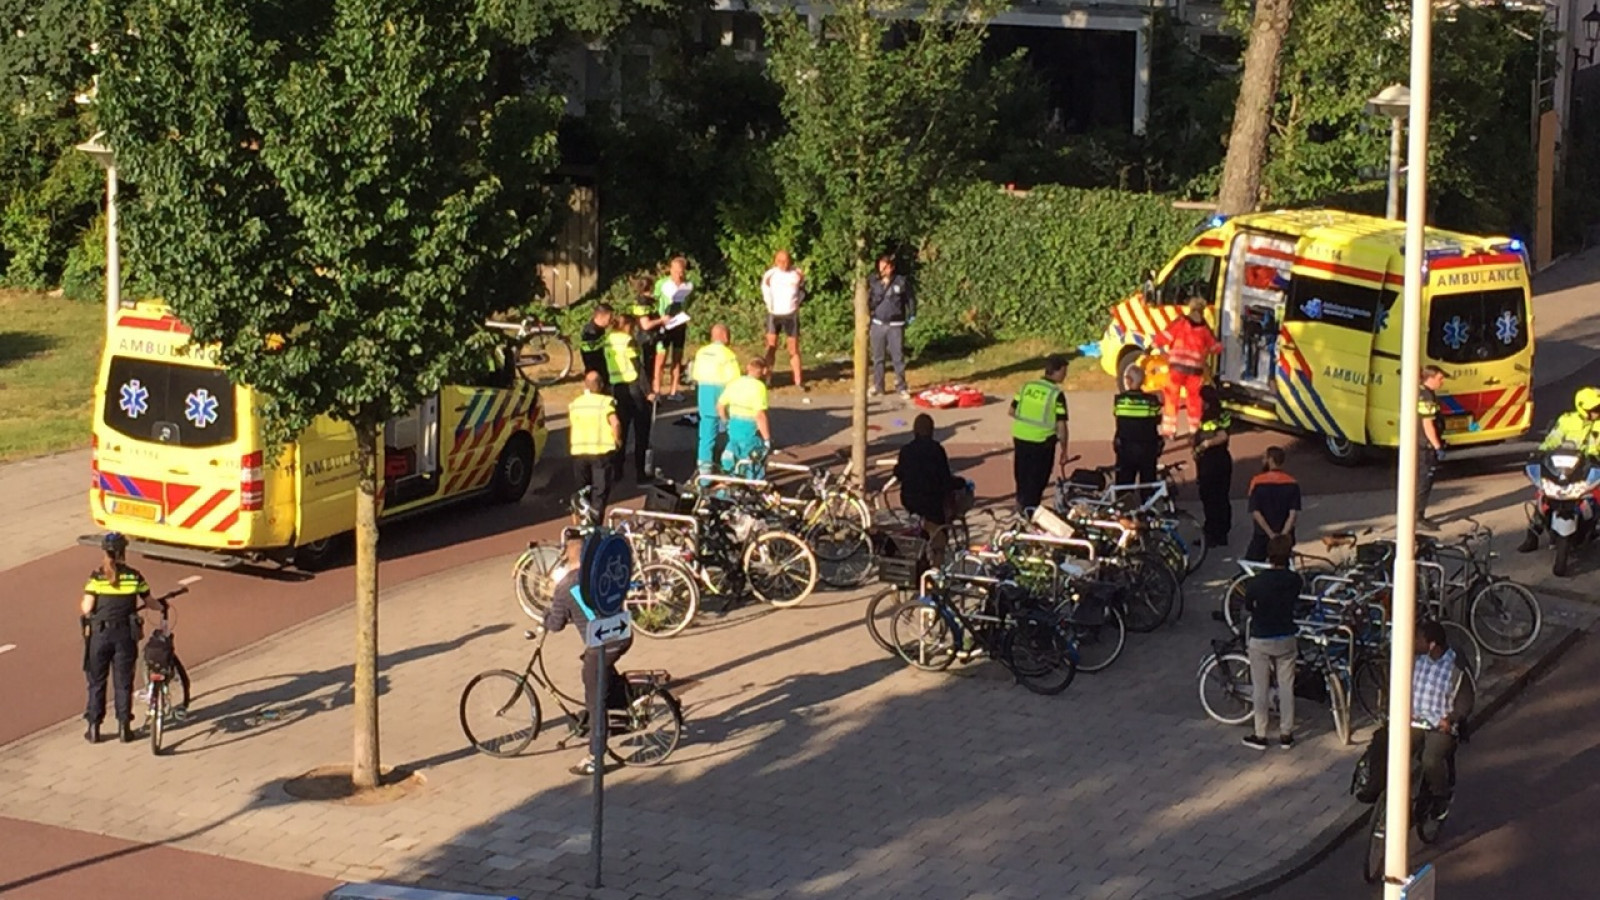 Wielrenner en fietser botsen frontaal op Theophile de Bockstraat